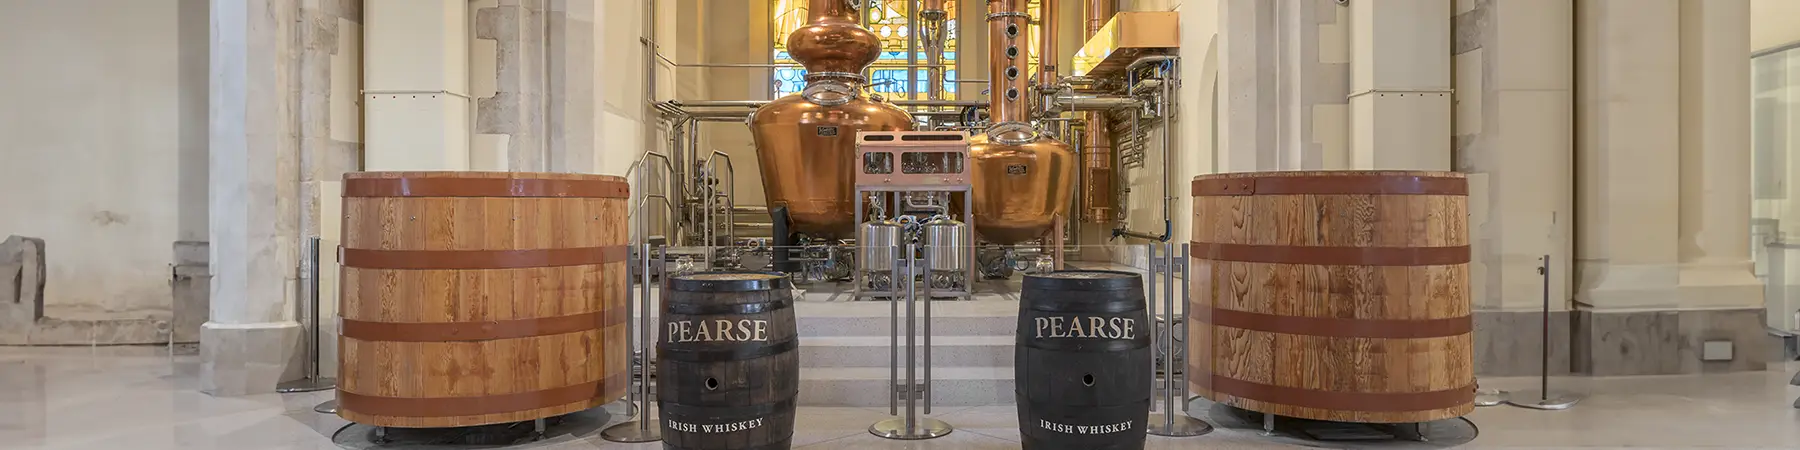 casks and stills inside Pearse Lyons distillery